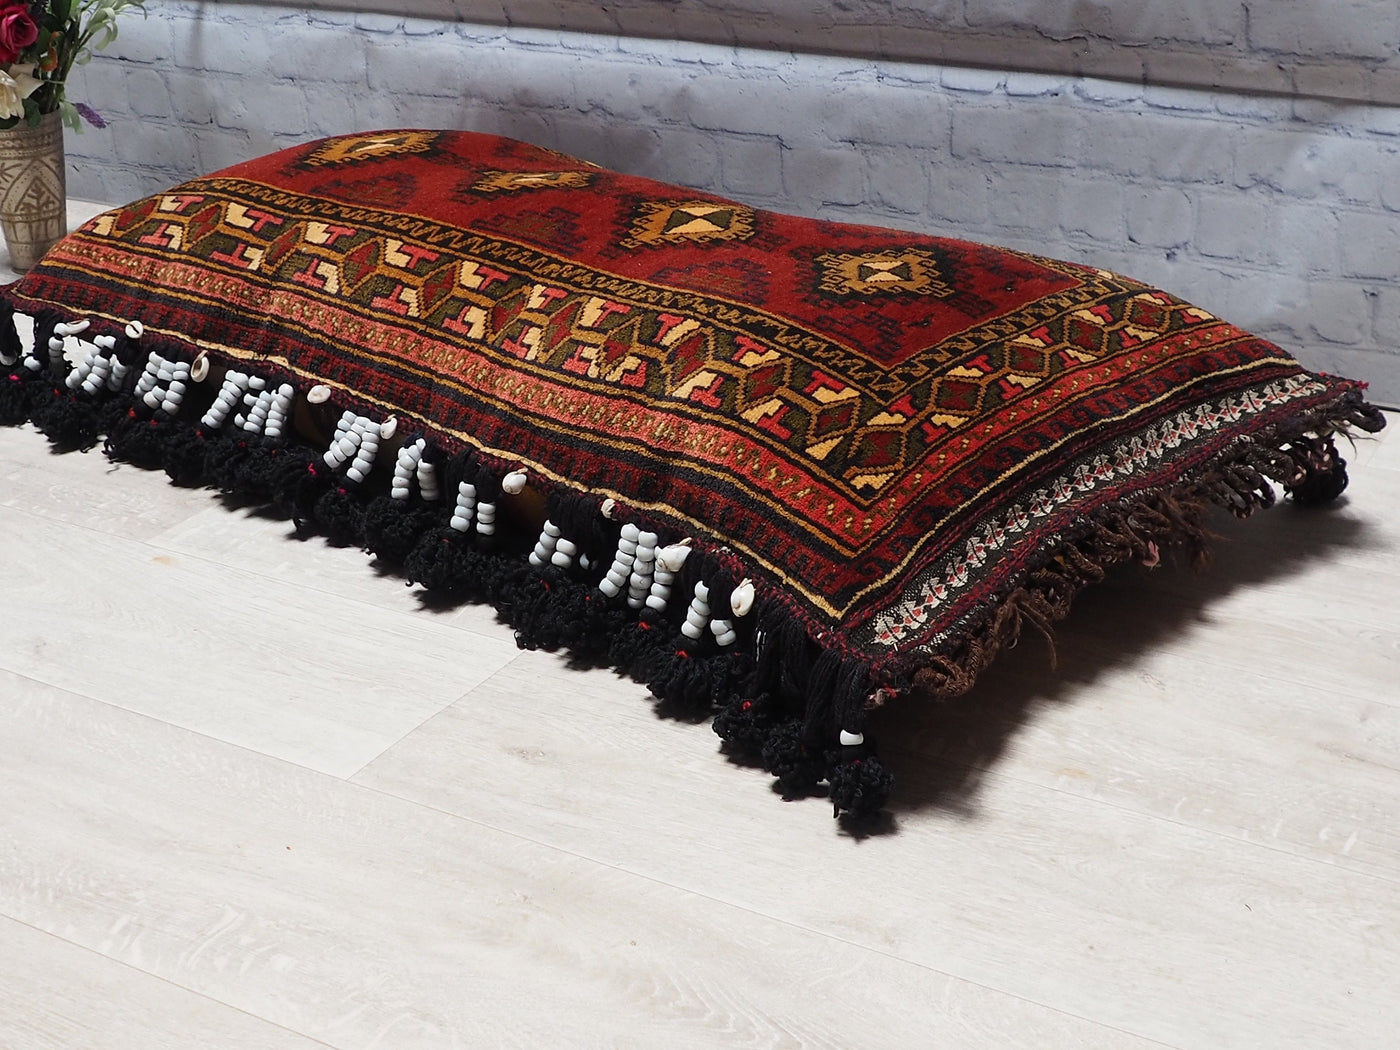 108x54 cm antik orient Afghan belochi Teppich nomaden sitzkissen bodenkissen  Bohemian cushion 1001-nacht Nr.22/3  Orientsbazar   